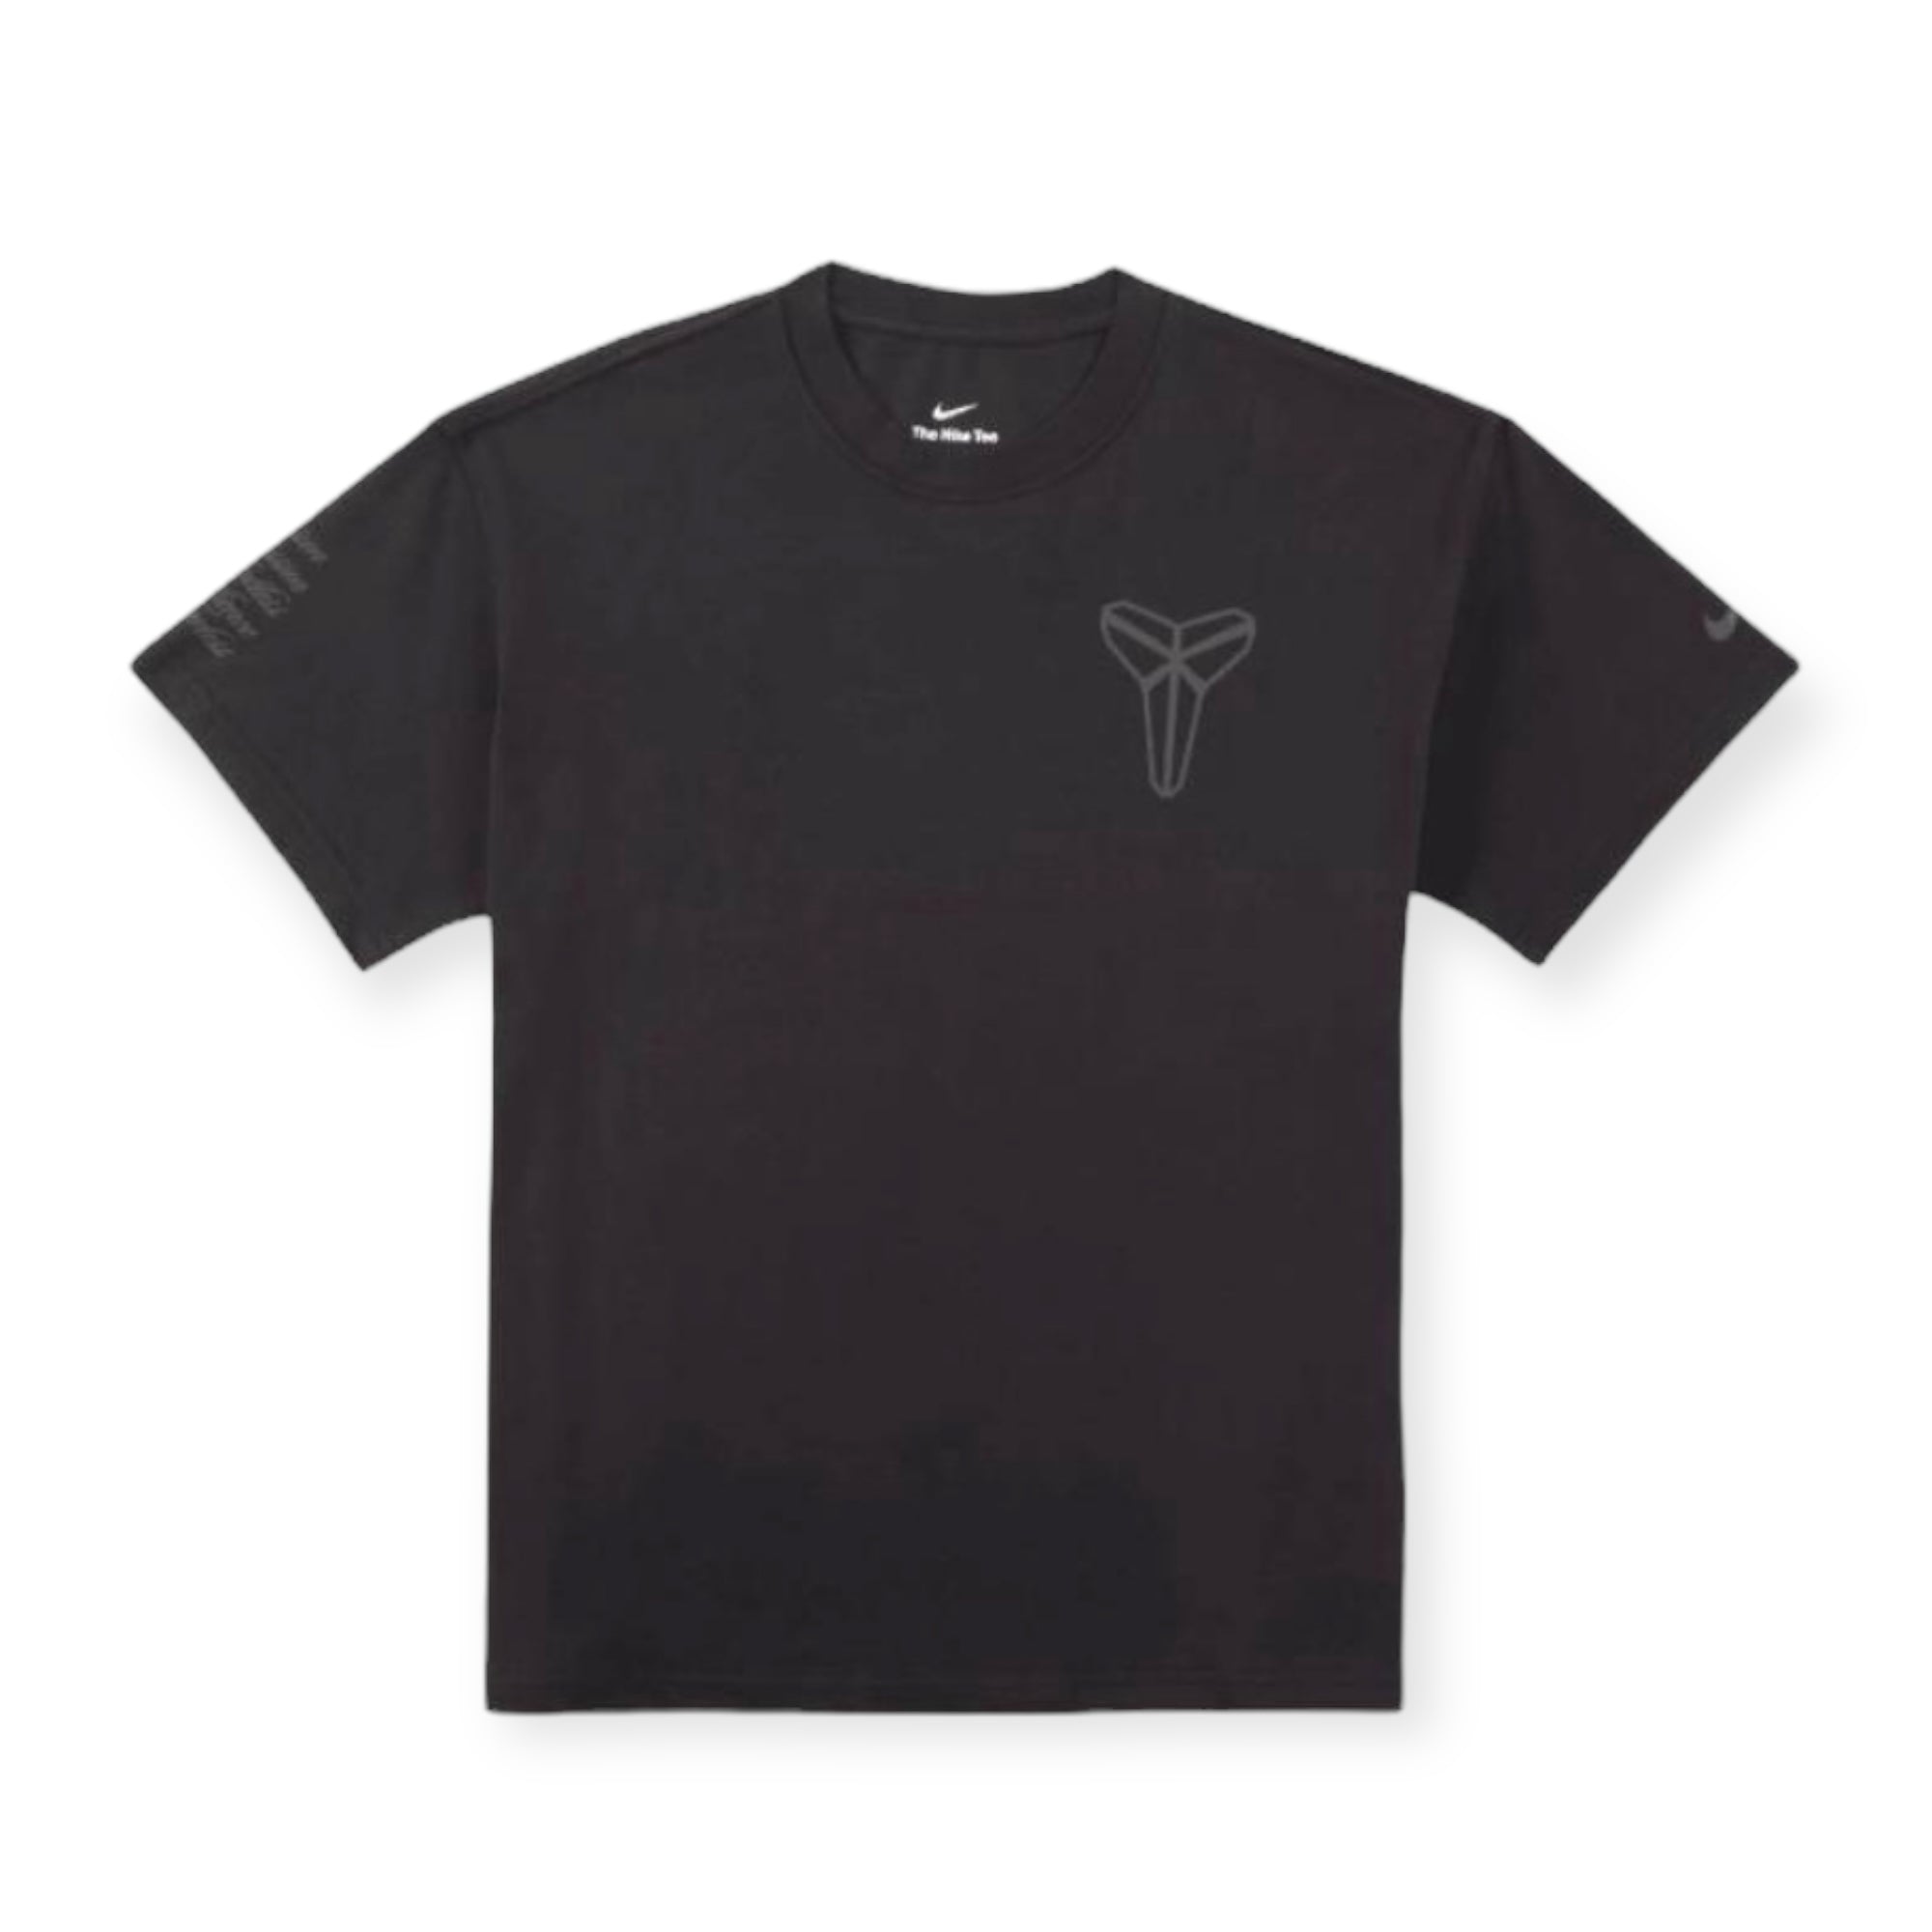 Nike Kobe Bryant Gift of Mamba Men's T-Shirt